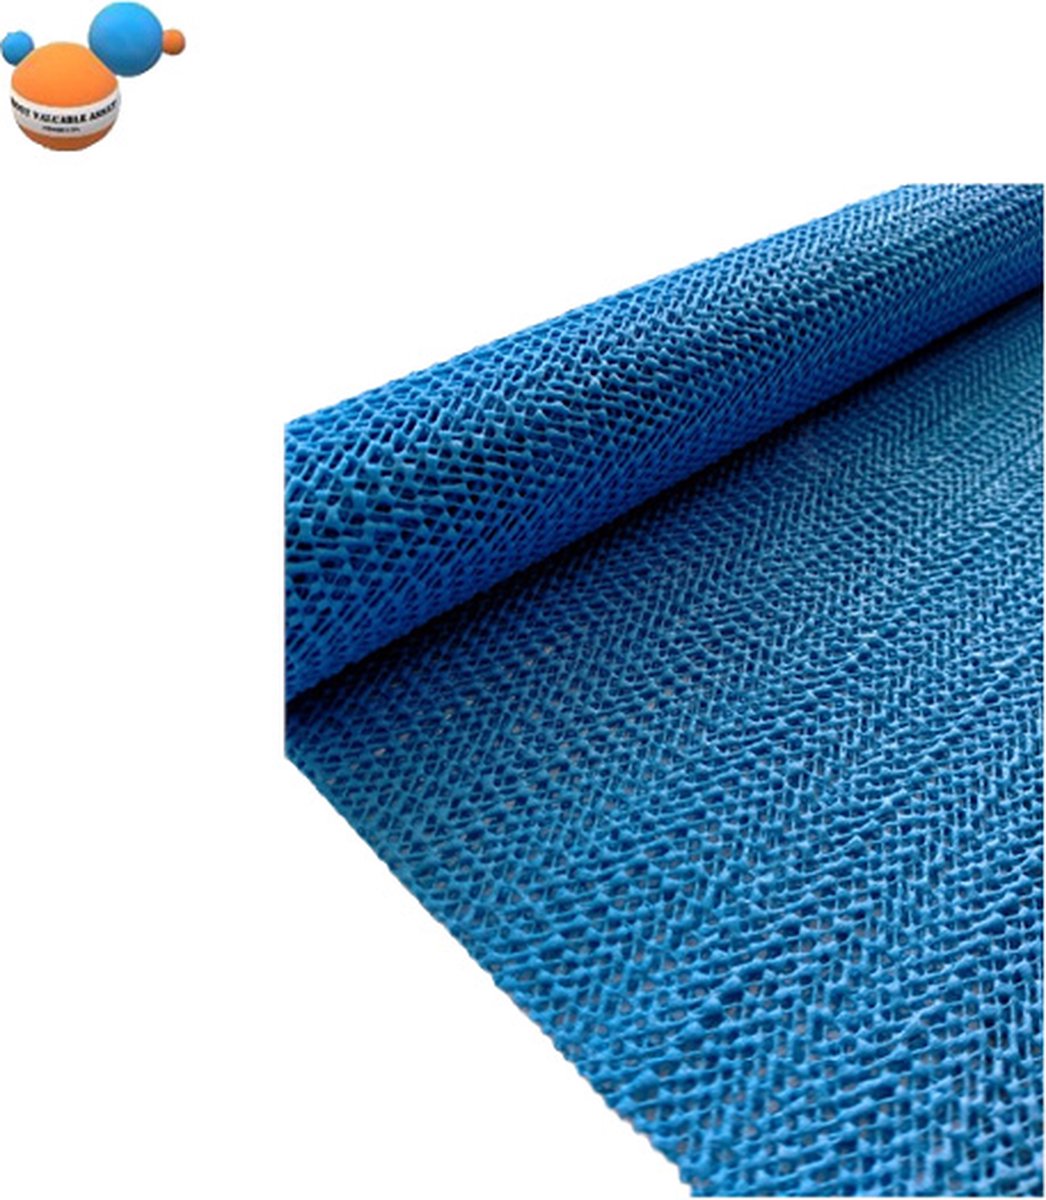 Anti slip mat blauw 30 x 150 cm | Most Valuable Asset products | Rubber mat blauw | Ideaal voor la of lade, onder tapijt of badmat, vloer, of dienblad | Grip mat tegen schuiven en bewegen